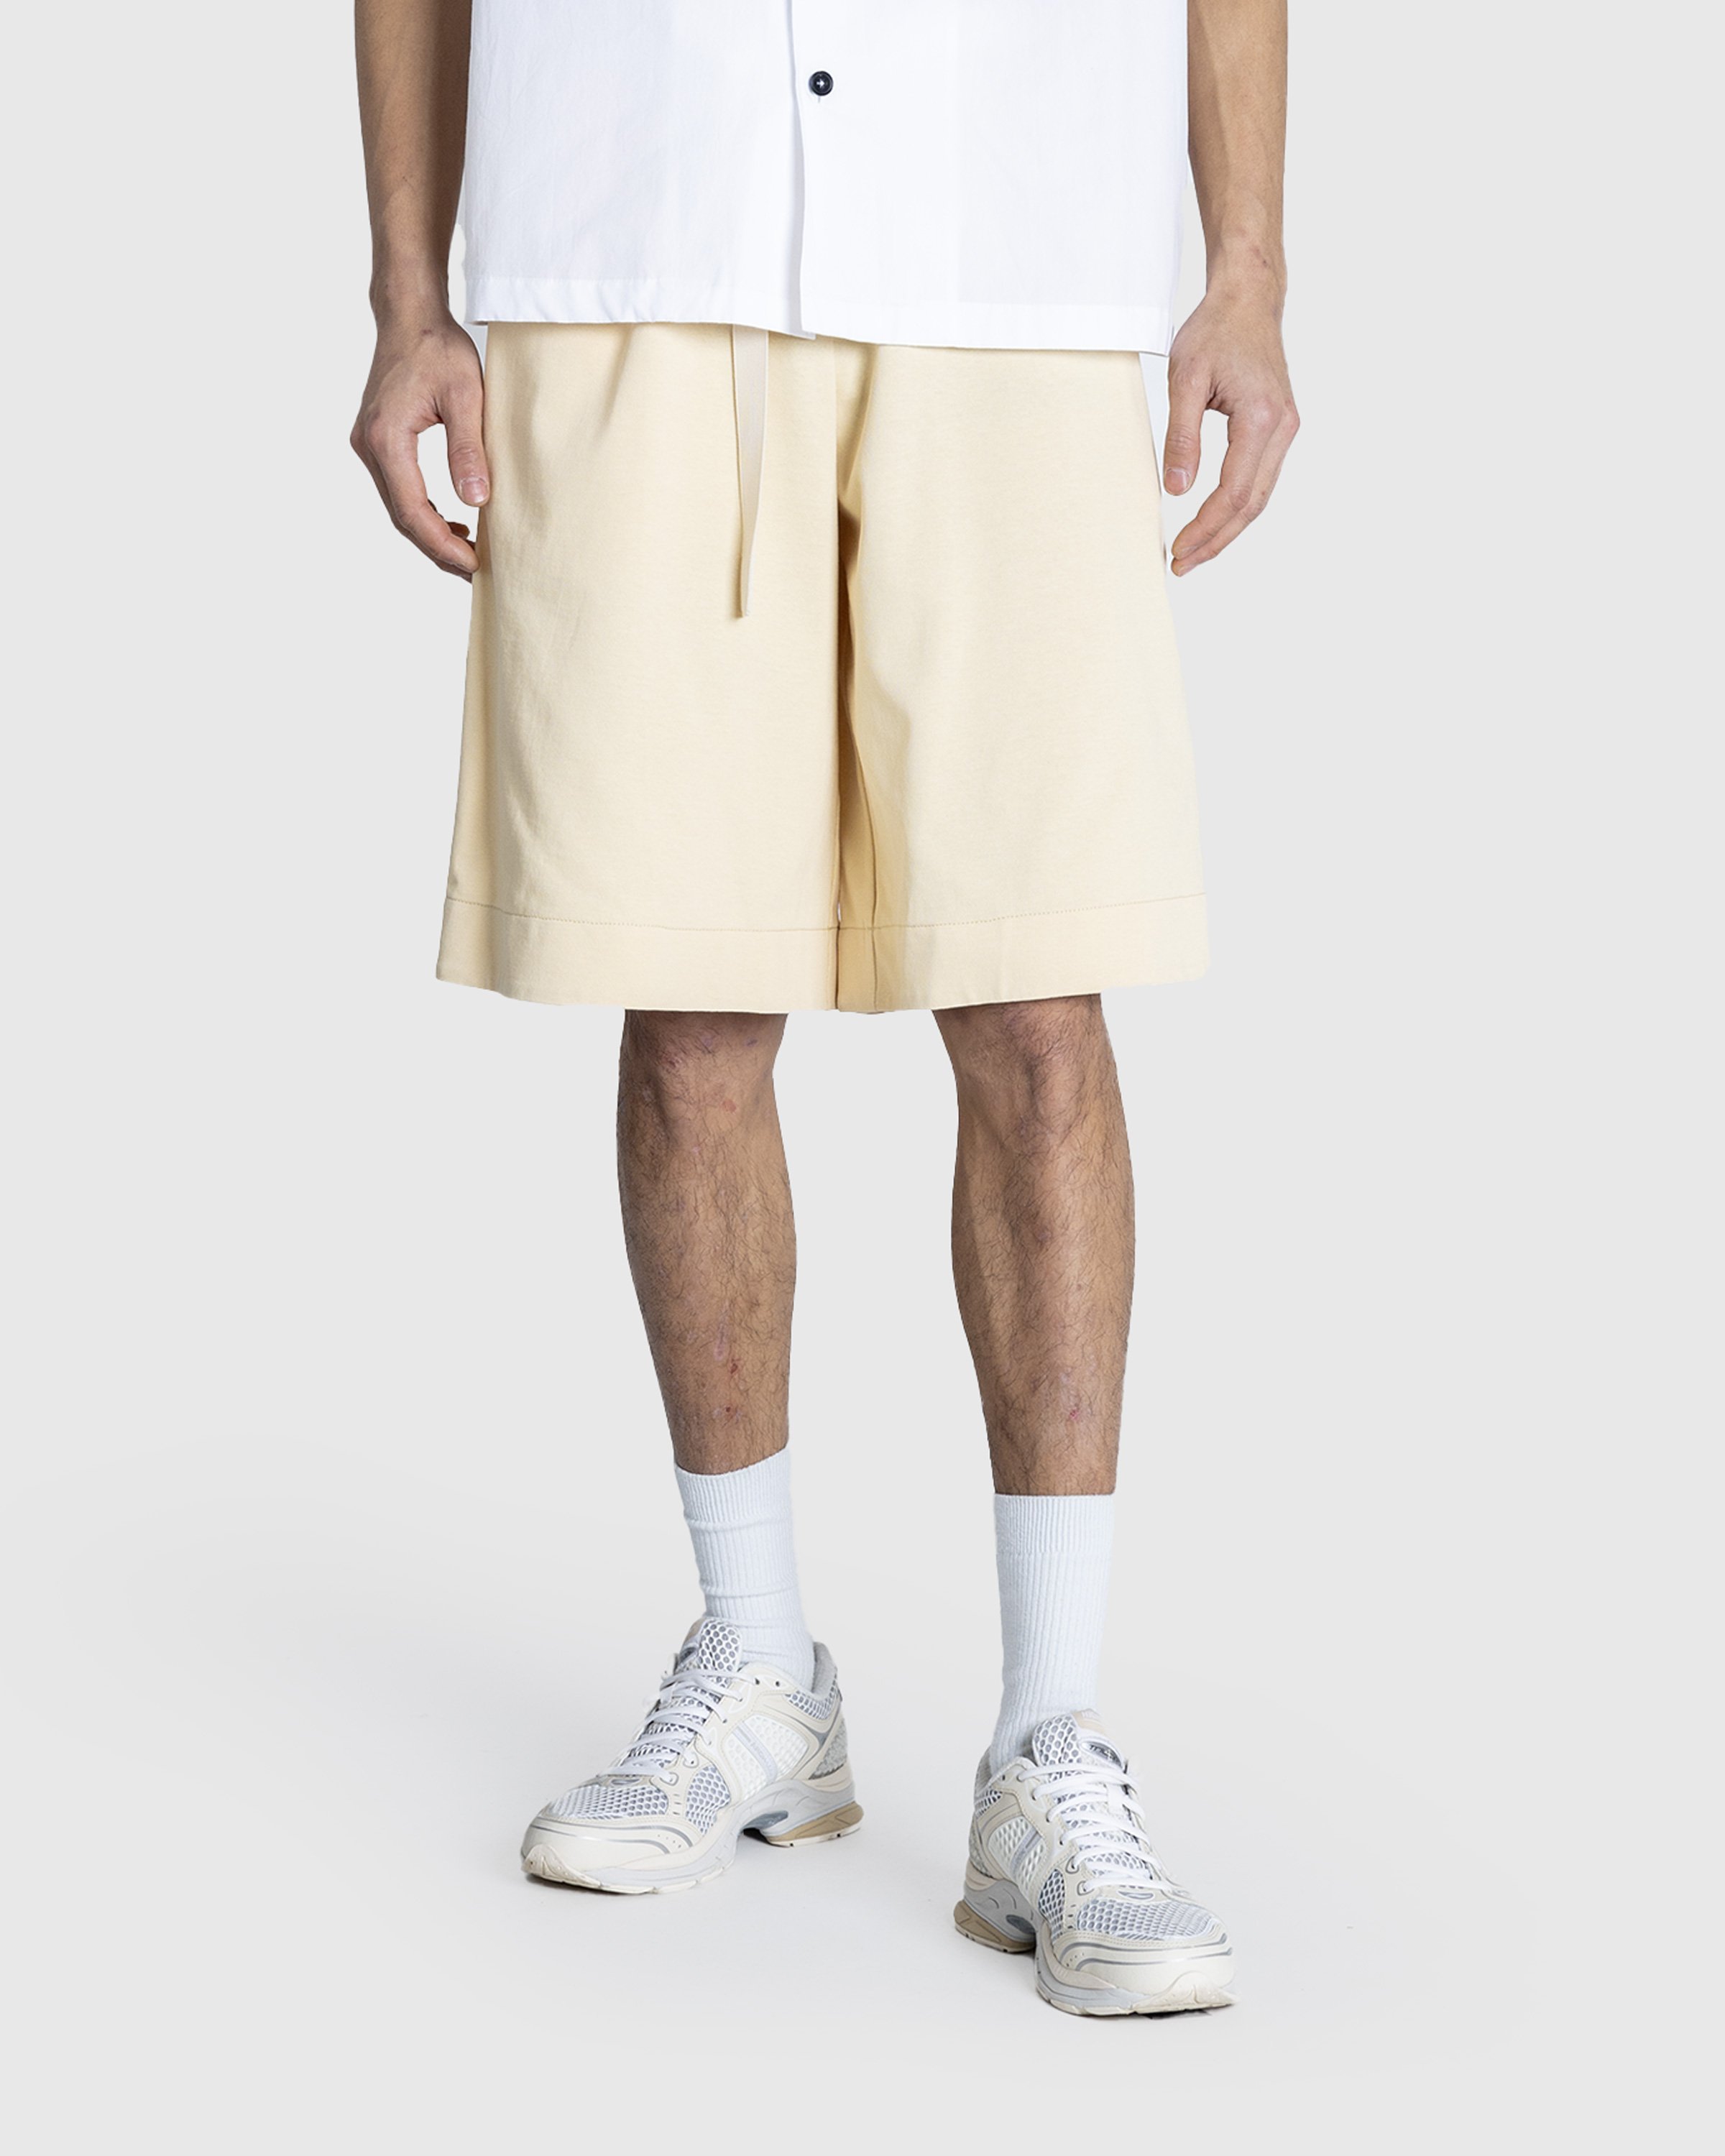 Jil Sander - Shorts - Clothing - Yellow - Image 2